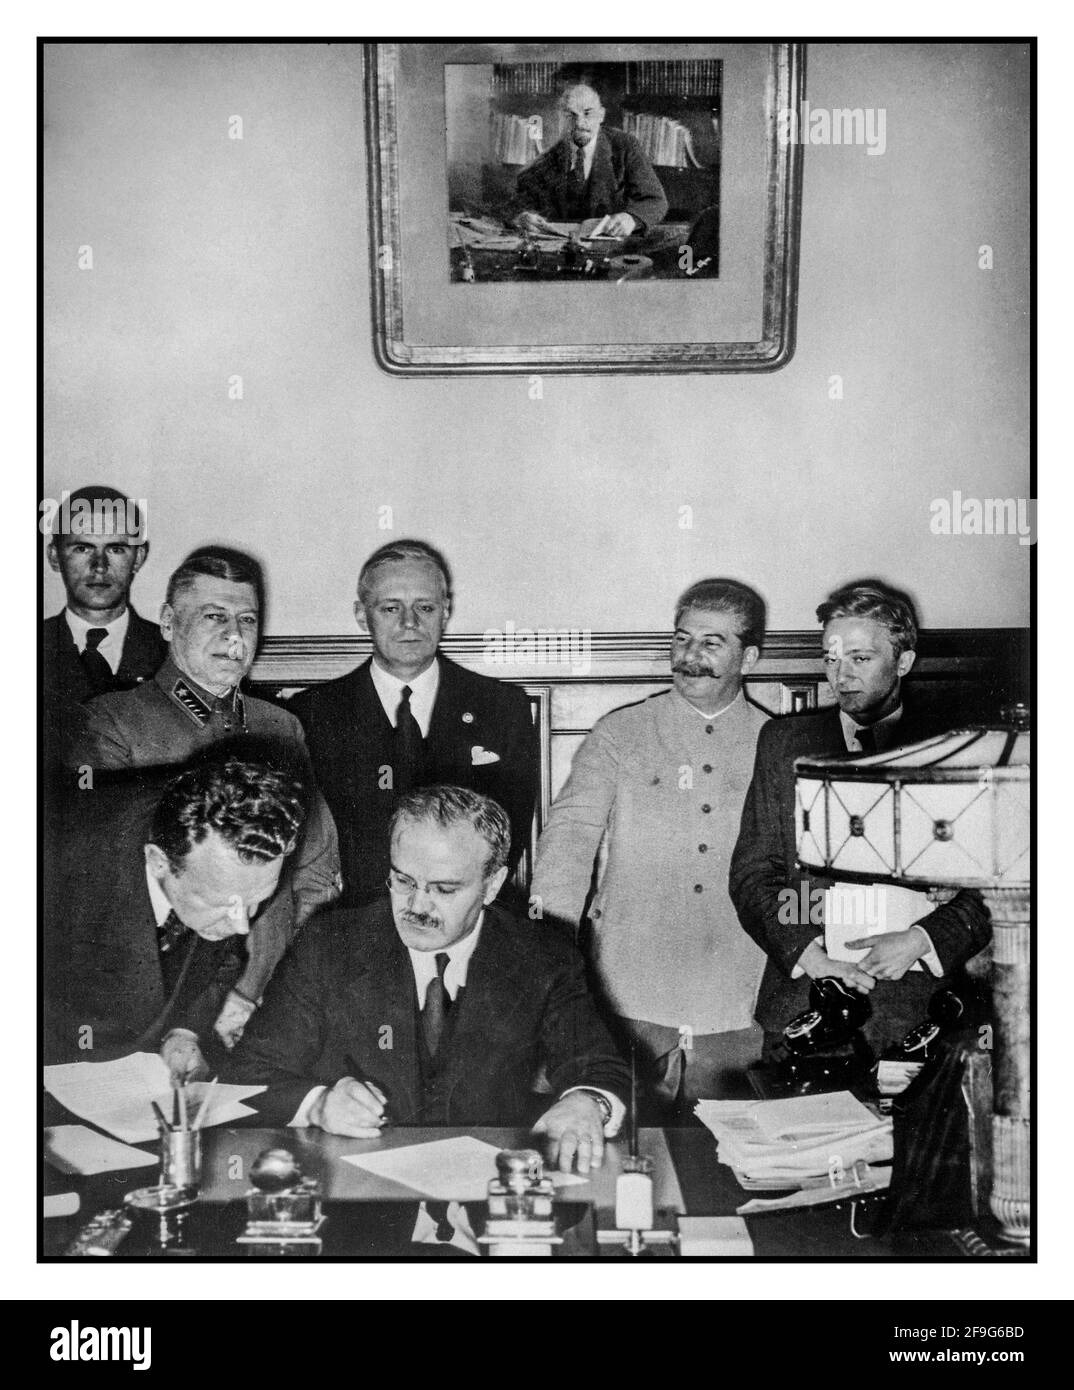 MOLOTOW 1939 der sowjetische Außenminister Wjatscheslaw Molotow unterzeichnet am 28. September 1939 in Moskau den deutsch-sowjetischen Freundschaftsvertrag; hinter ihm stehen Richard Schulze-Kossens (Ribbentrops Adjutant), Boris Schaposchnikow (Generalstabschef der Roten Armee), Joachim von Ribbentrop, Joseph Stalin, Wladimir Pavlov (sowjetischer Übersetzer). Alexei Schkvarzew (sowjetischer Botschafter in Berlin) steht neben Molotow. Portrait von Lenin hinter Moskau Sowjetunion Russland Stockfoto